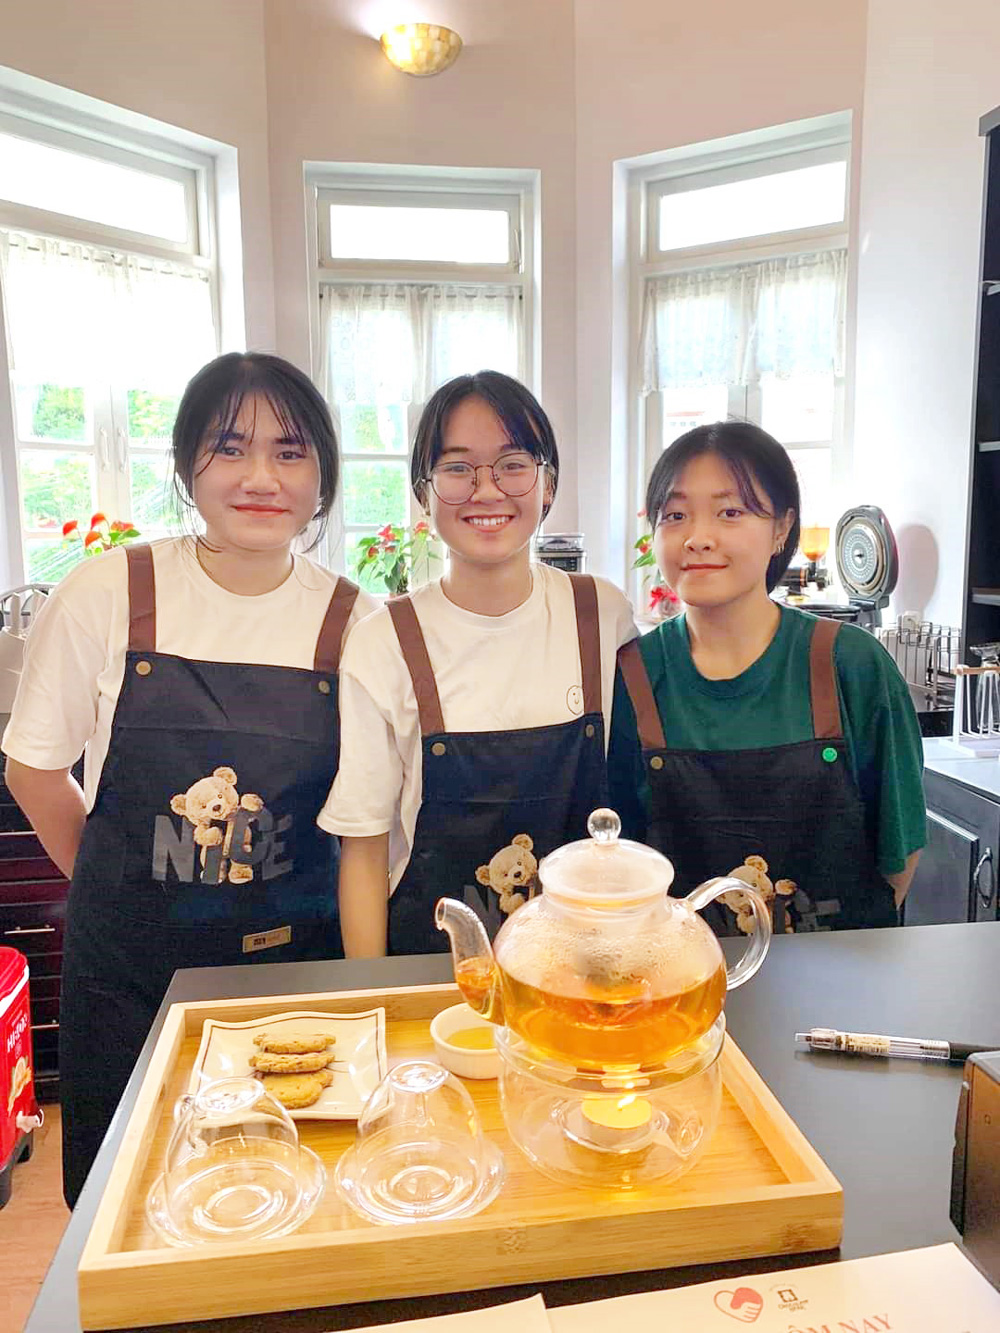 Niềm vui của Tiên, My và bạn khi được học làm bánh và pha chế
tại tiệm cà phê nhỏ